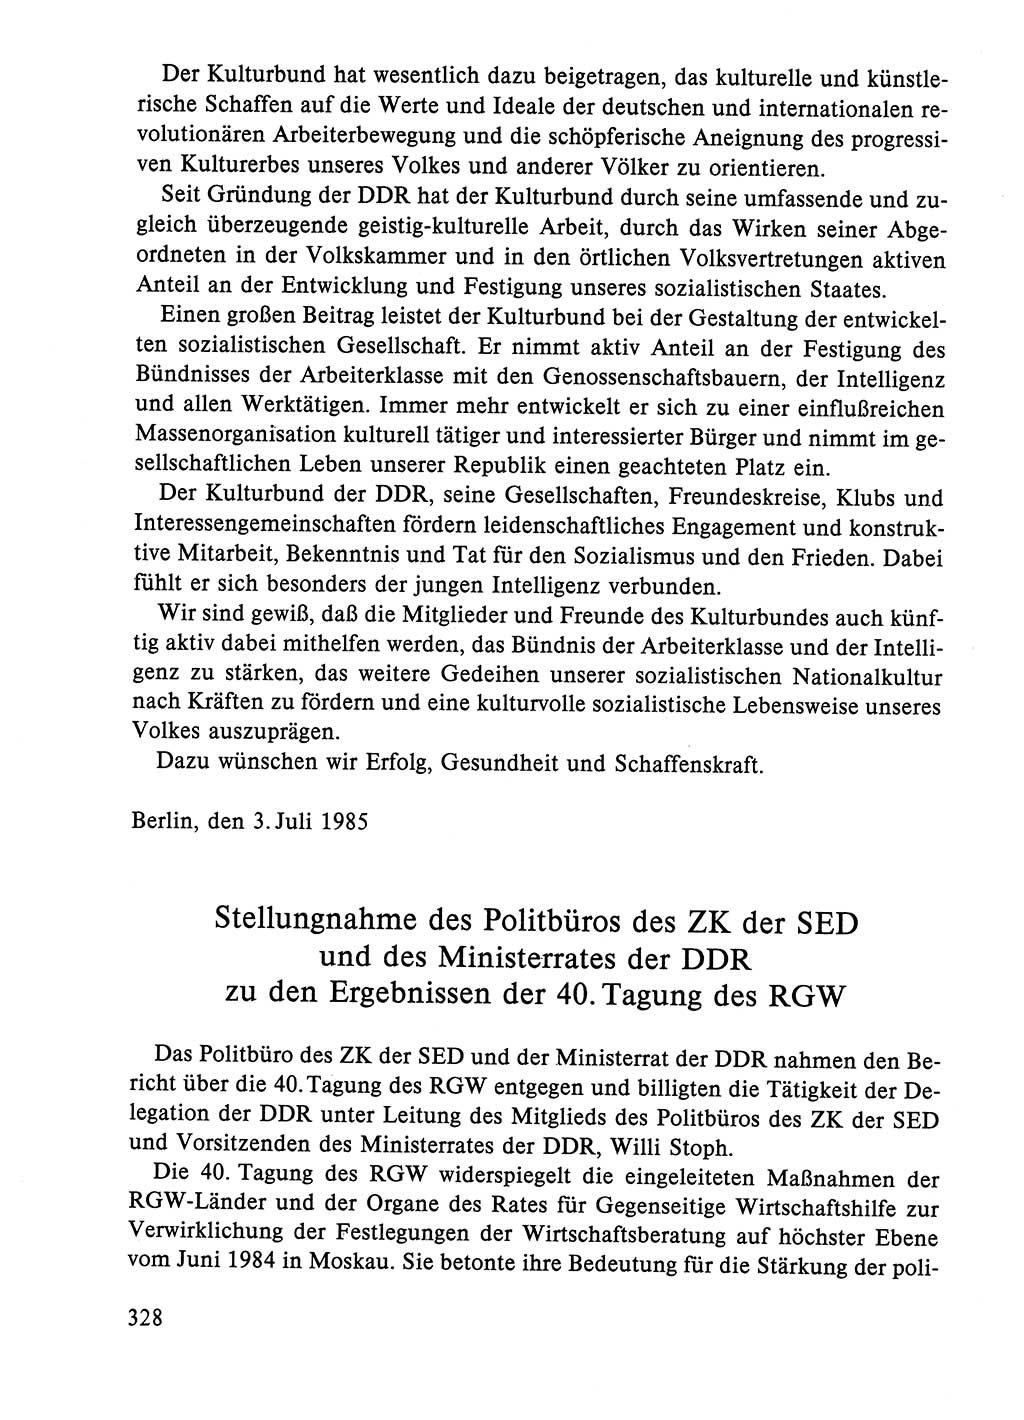 Dokumente der Sozialistischen Einheitspartei Deutschlands (SED) [Deutsche Demokratische Republik (DDR)] 1984-1985, Seite 99 (Dok. SED DDR 1984-1985, S. 99)